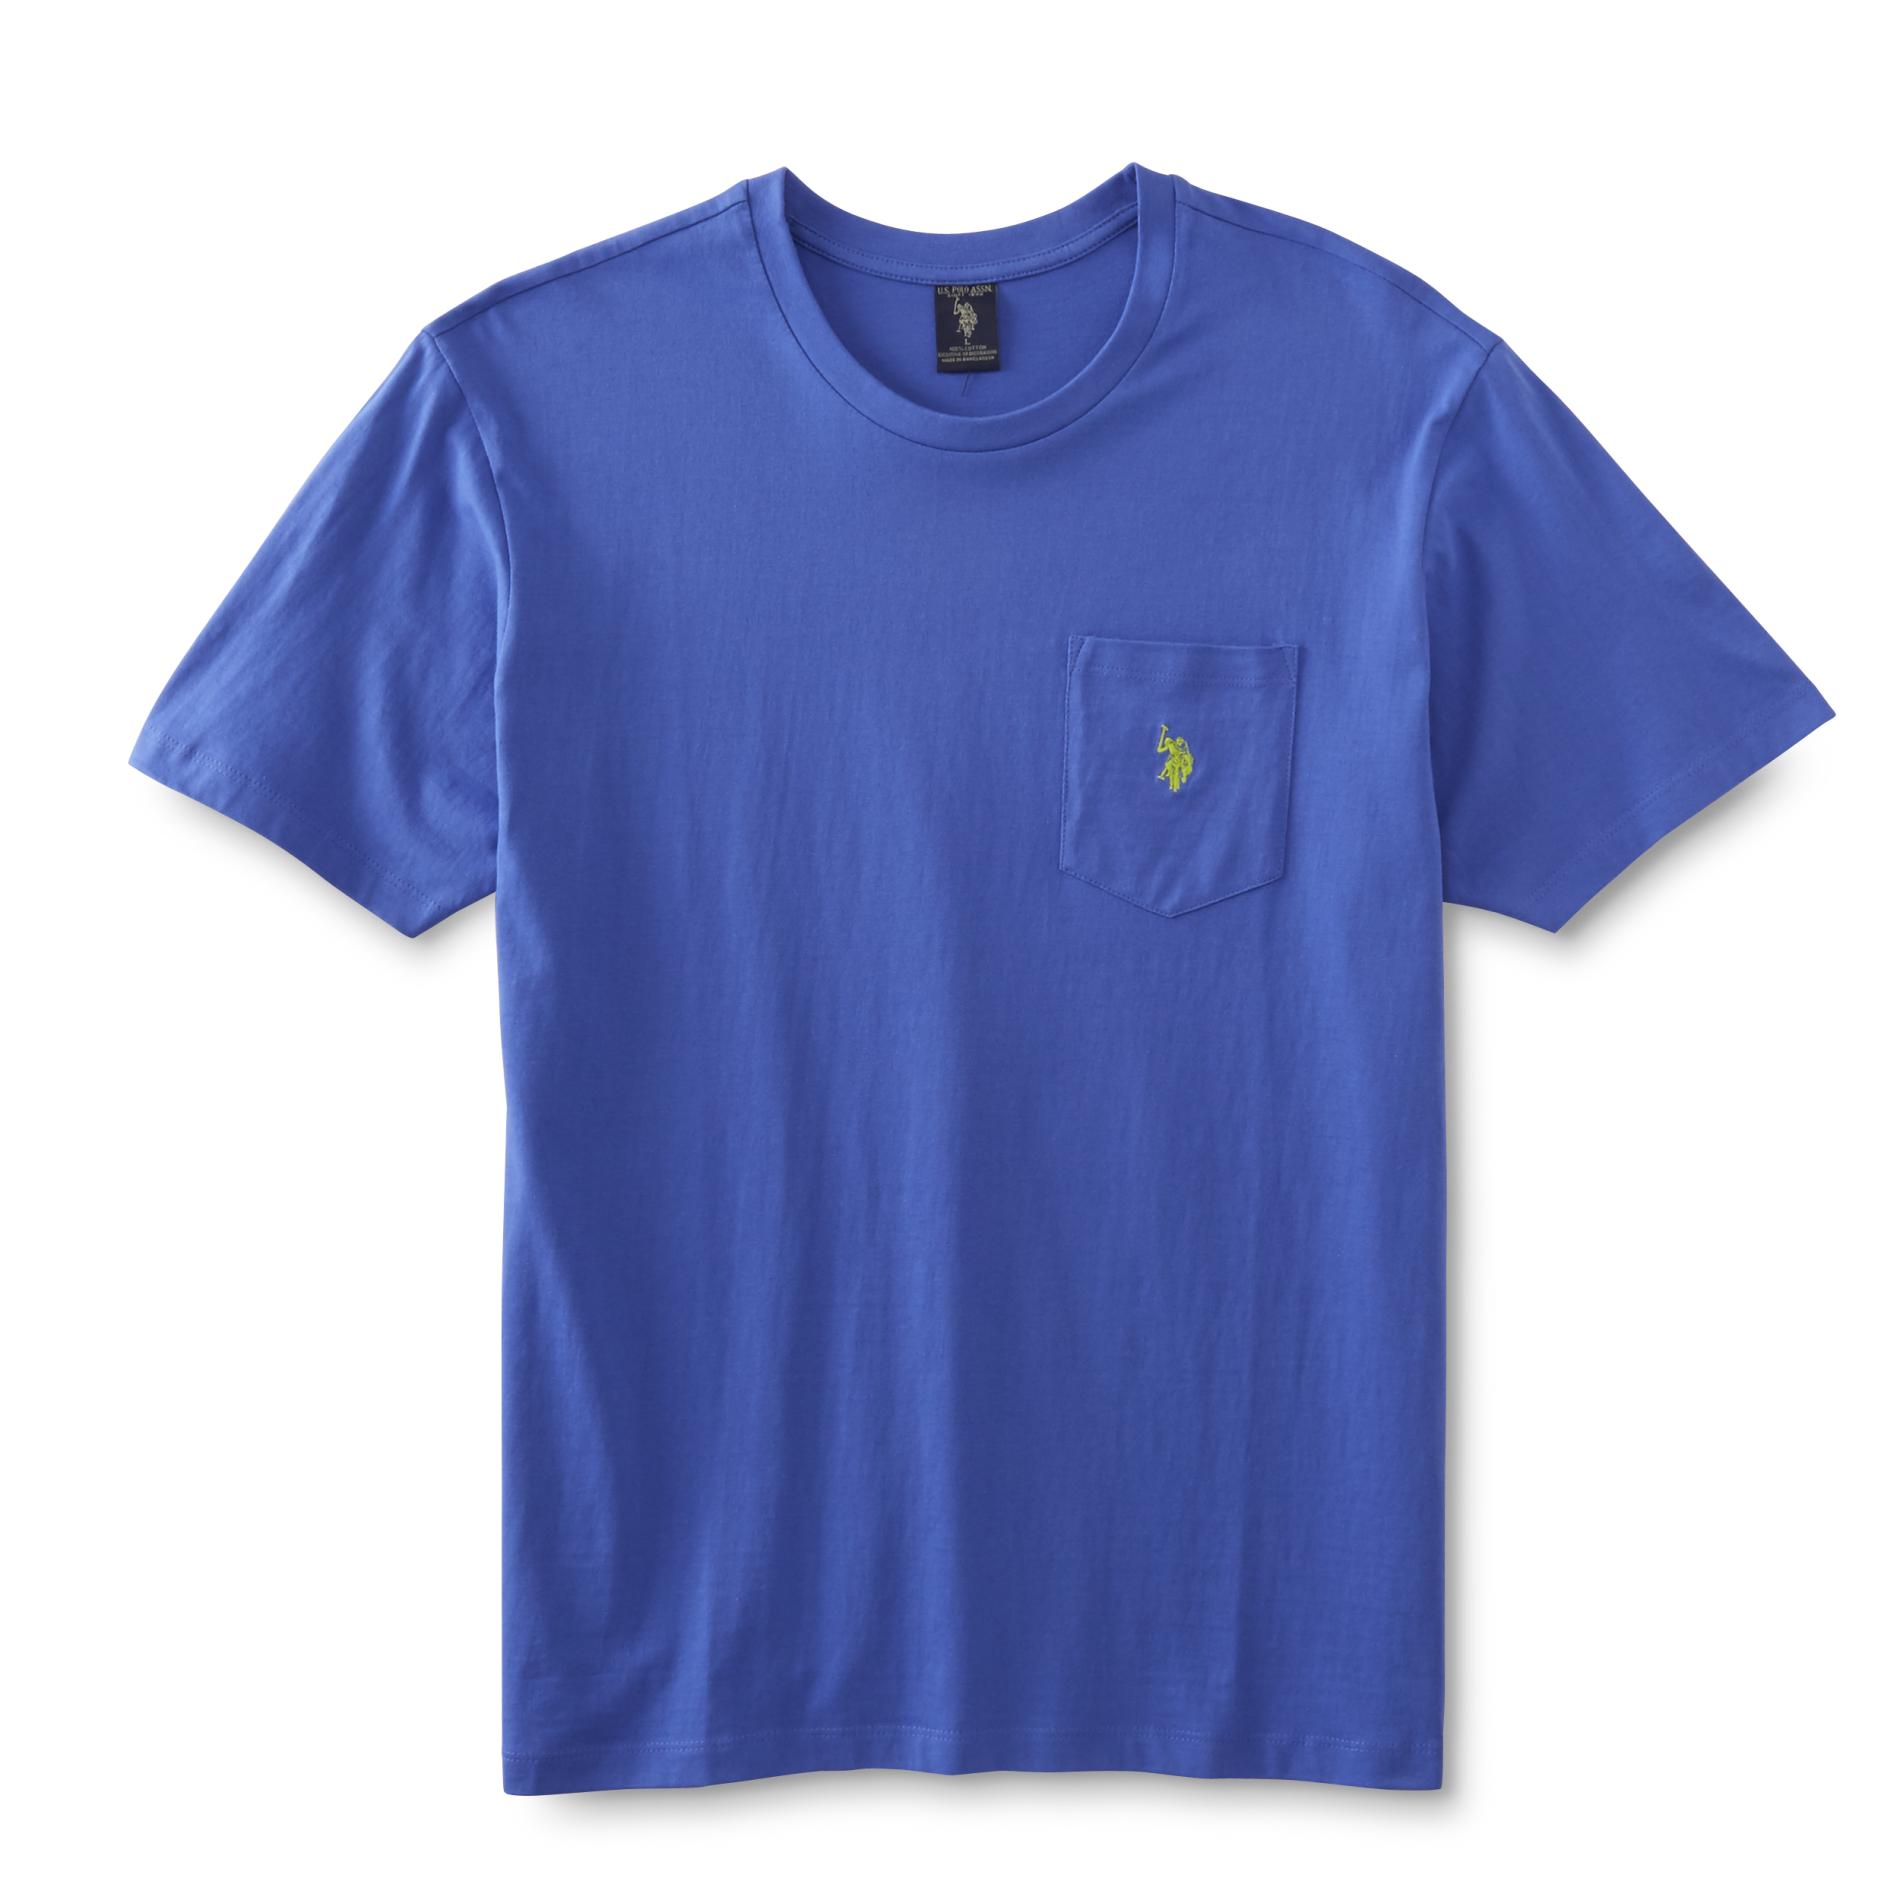 U.S. Polo Assn. Men's Pocket T-Shirt